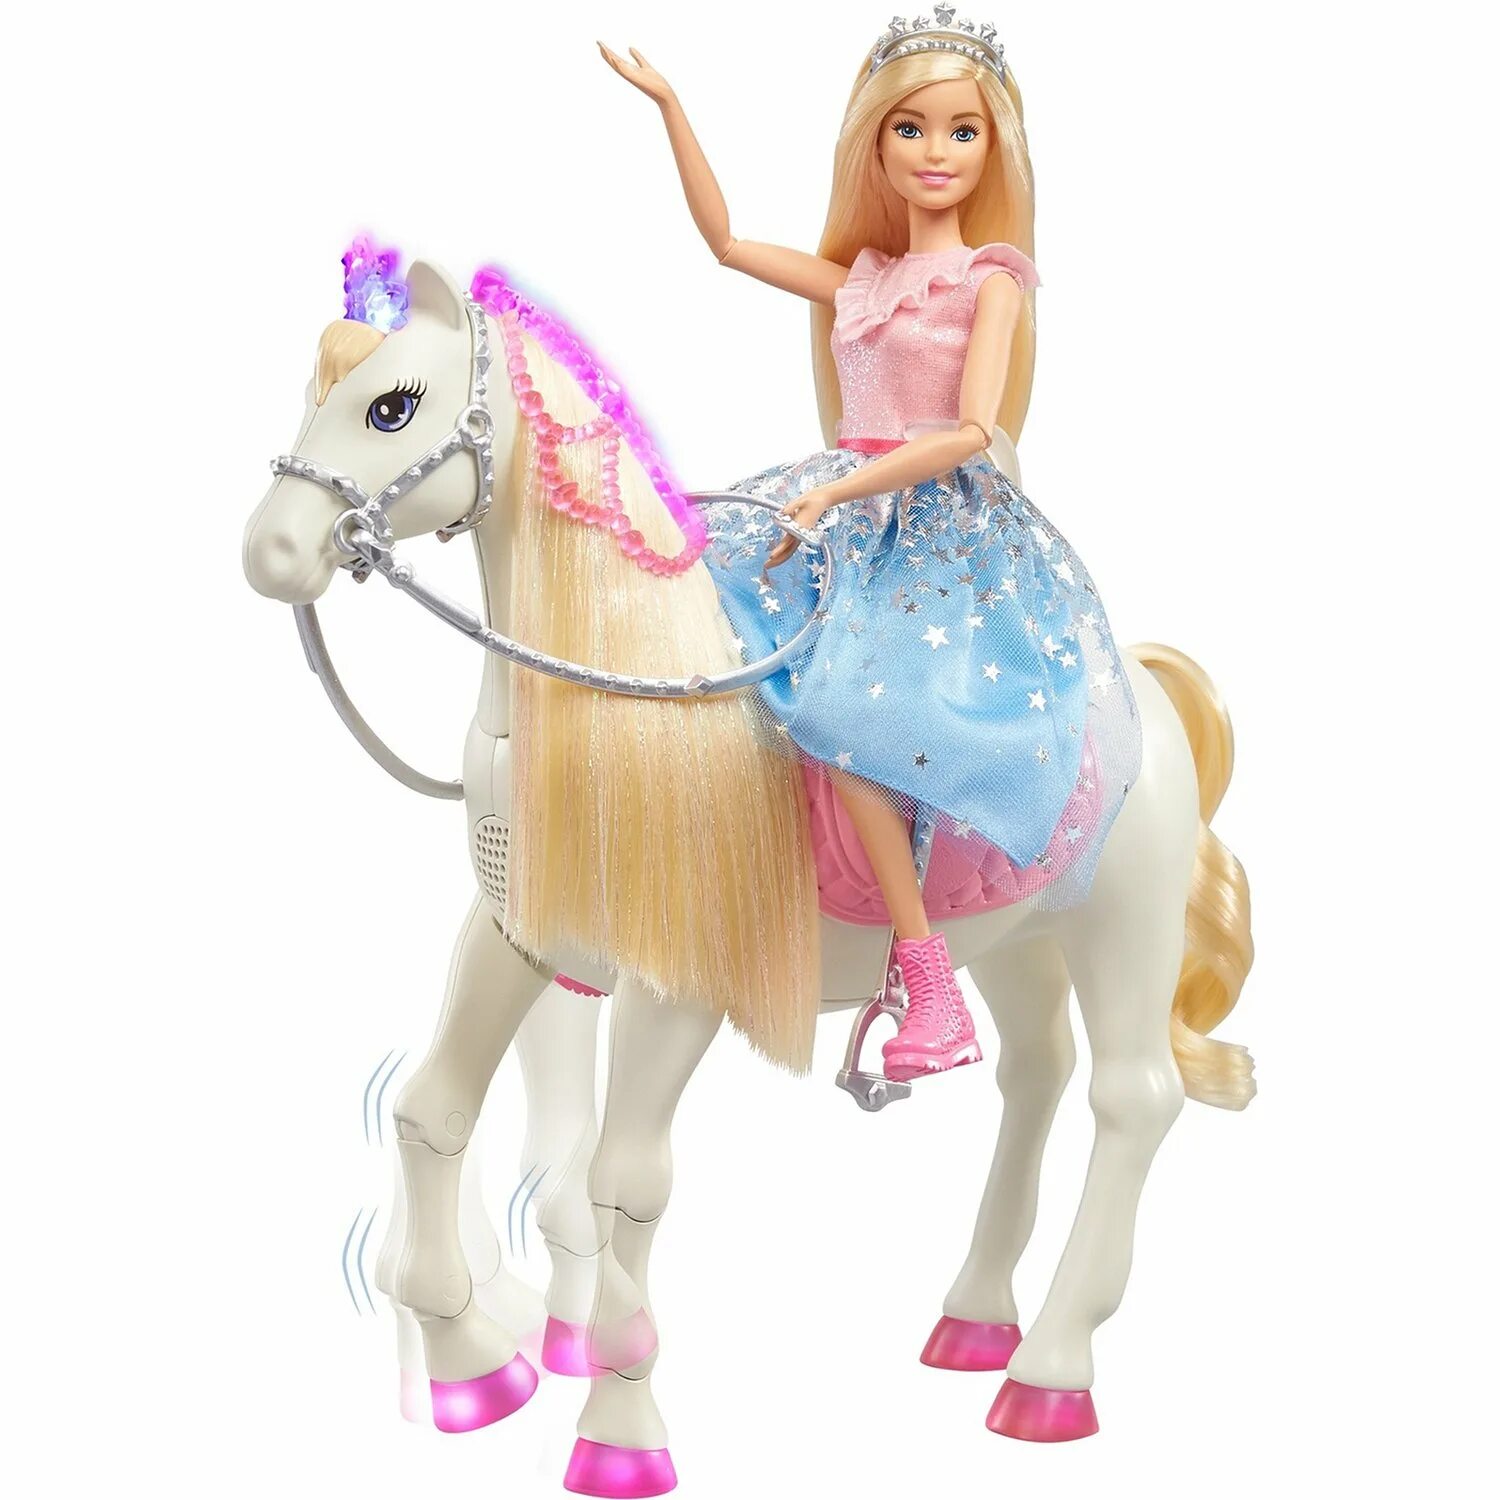 Кукла Barbie Princess Adventure на лошади, gml79. Кукла Барби принцесса с лошадью. Кукла Барби принцесса Эдвенчер. Кукла Barbie семья приключения принцессы в синей пачке на лошади.